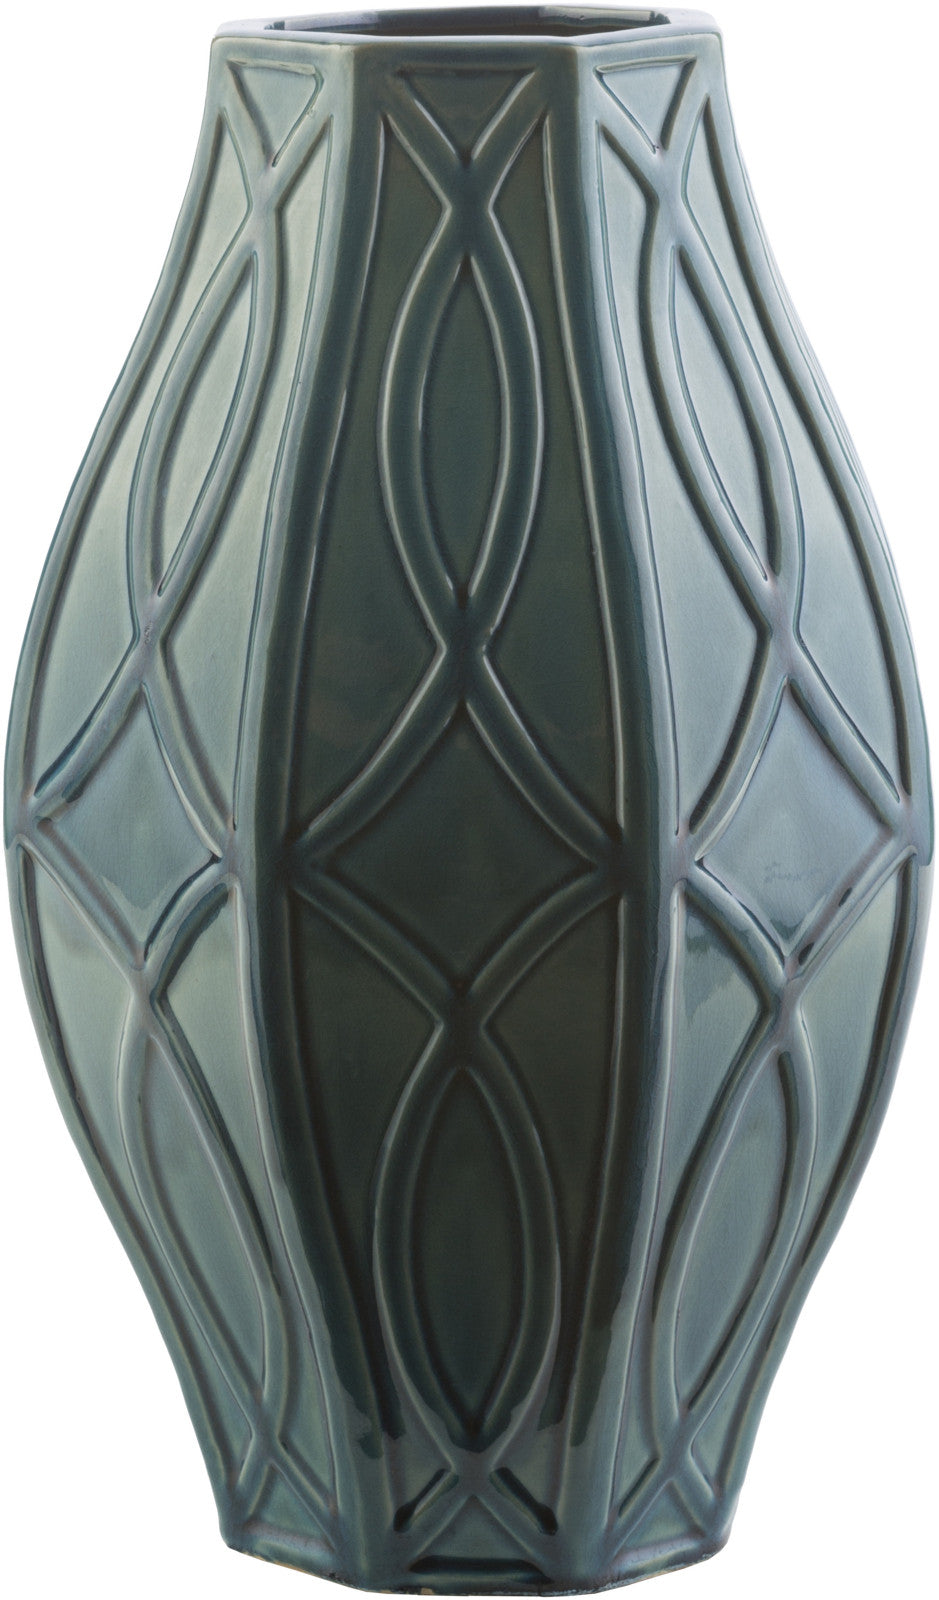 Surya Freeport FRT-680 Vase 10 X 10 X 15.5 inches